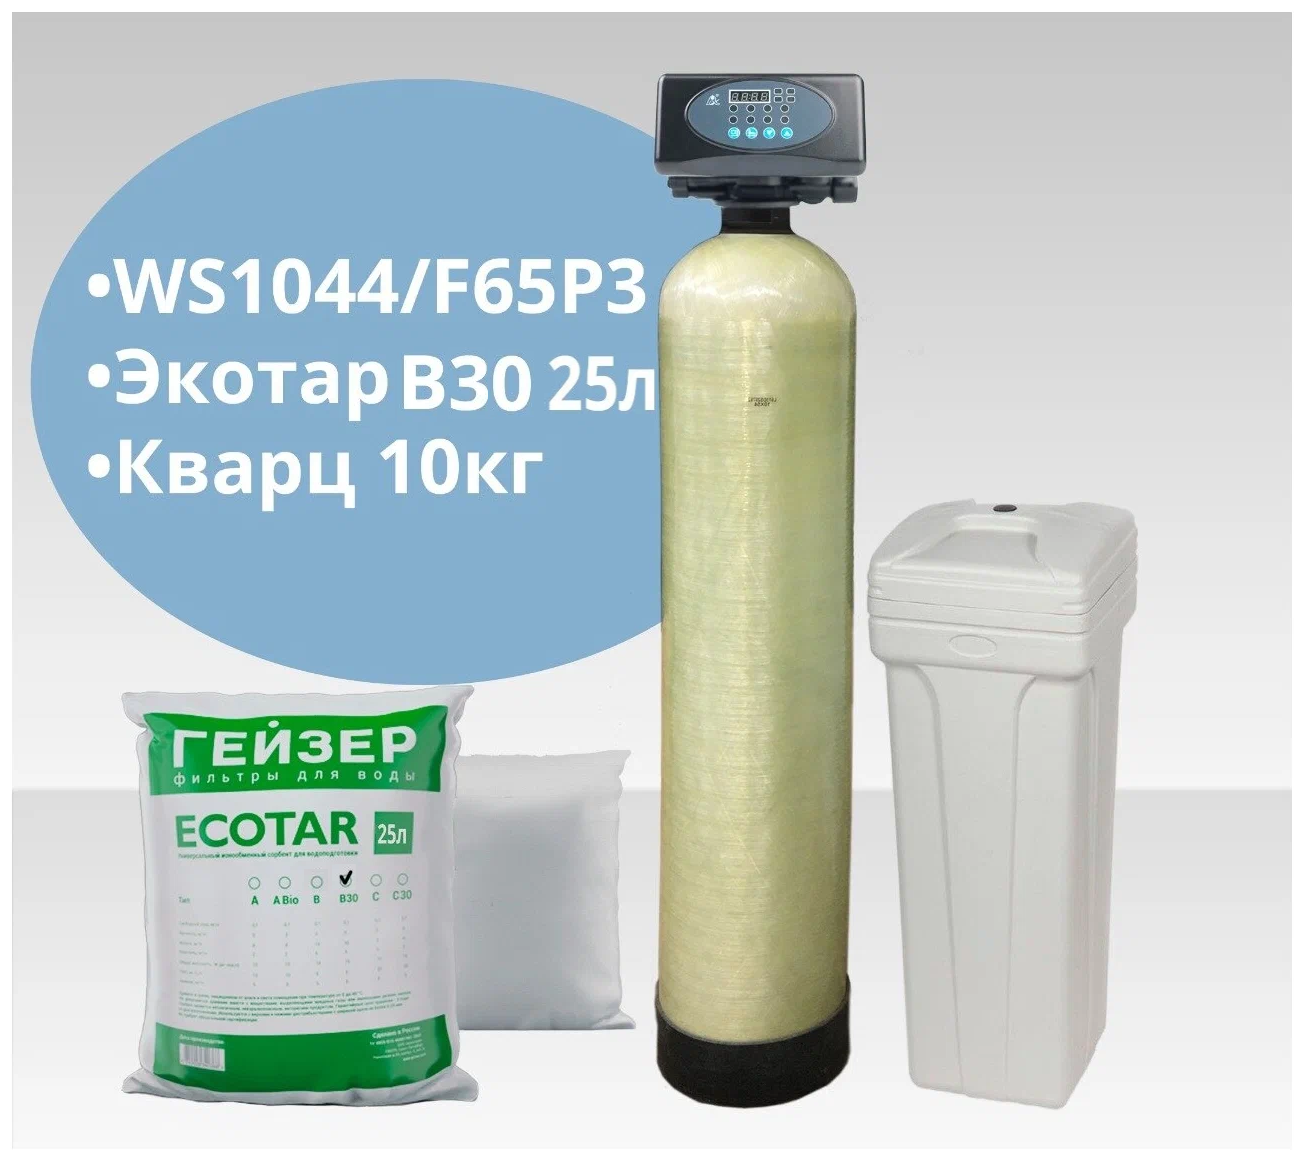 Установка WS1044/F65P3-A (Экотар В30) обезжелезивание и умягчение воды